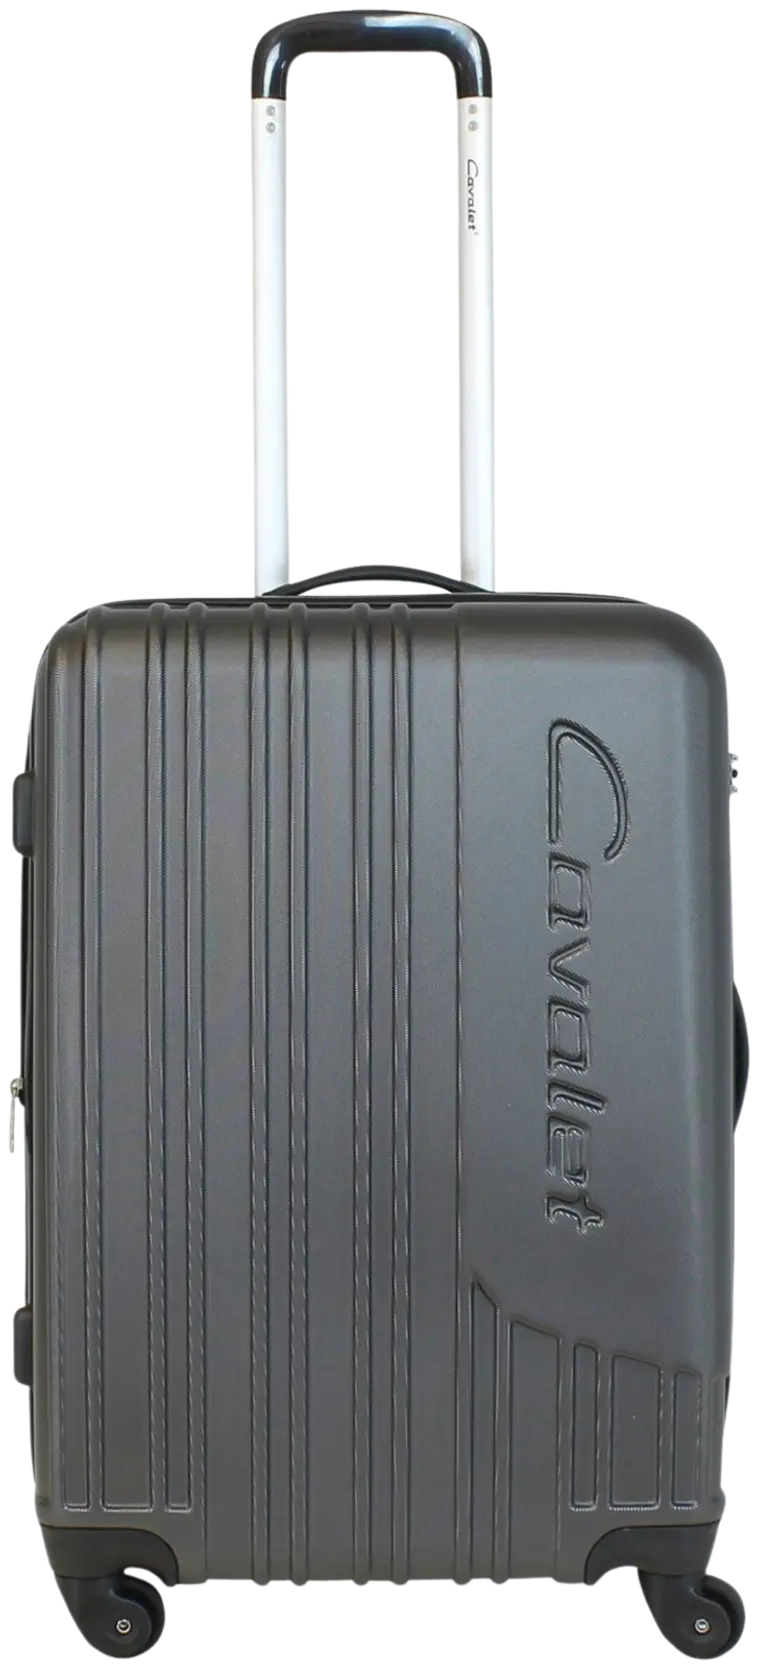 Cavalet Malibu matkalaukku M 65 cm, tummanharmaa - 1